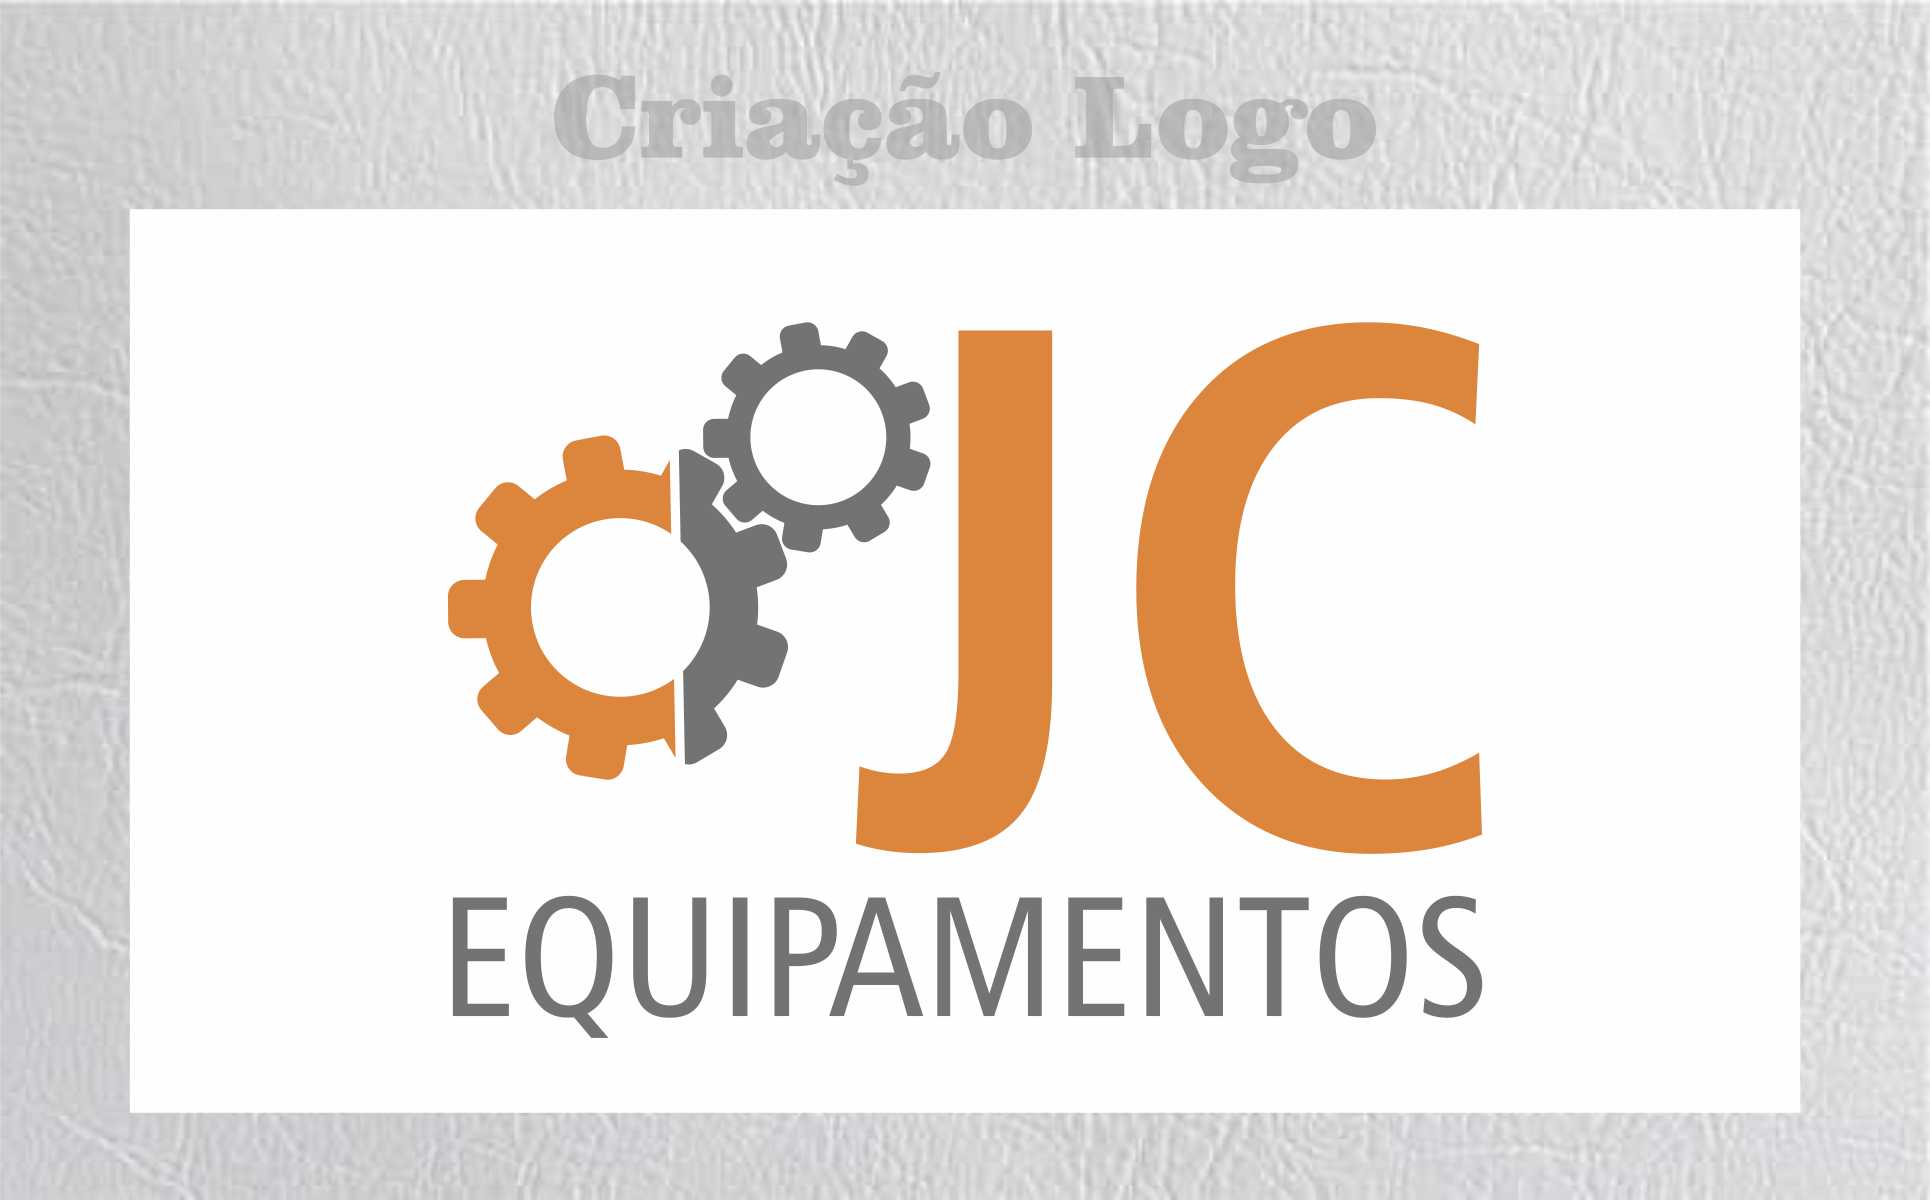 jc logo